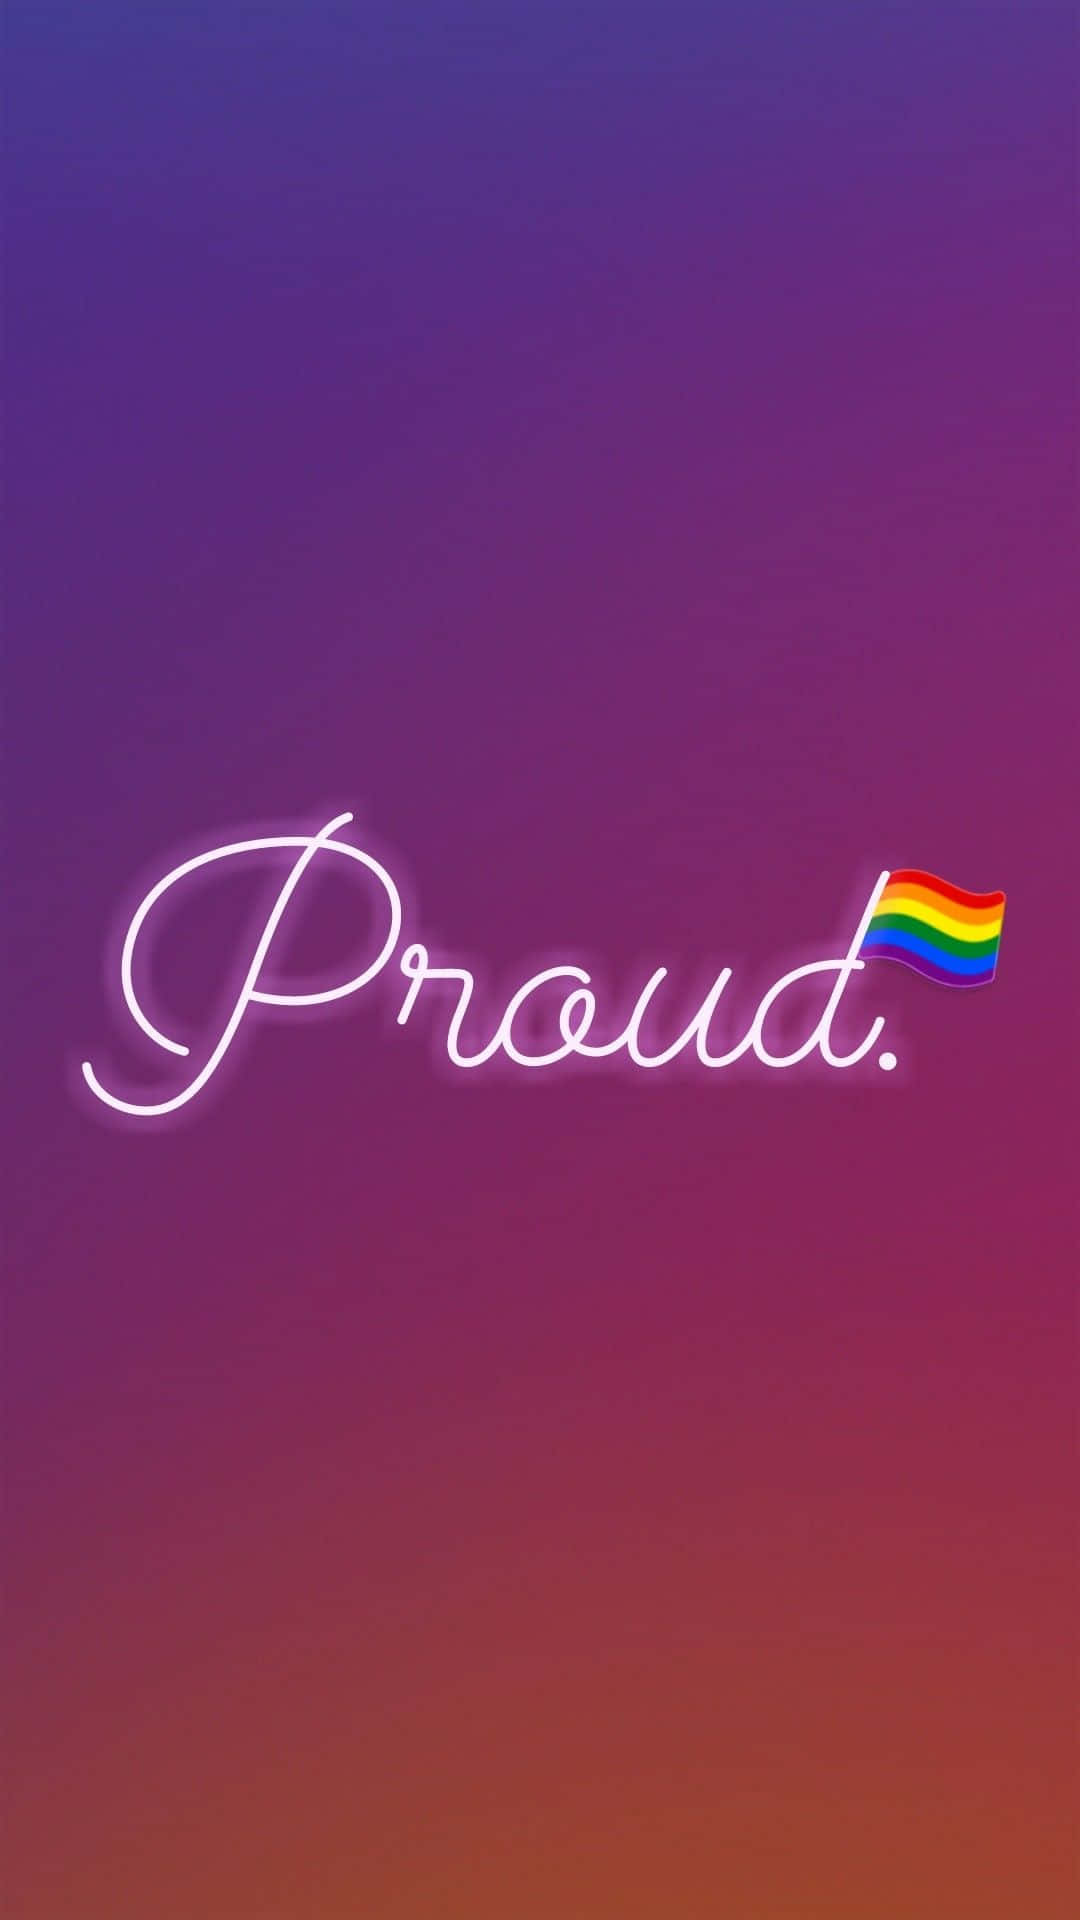 Proud - Lgbt Pride - Pride - Pride - Pride - Pride - Pride - Pride - Pride - Wallpaper